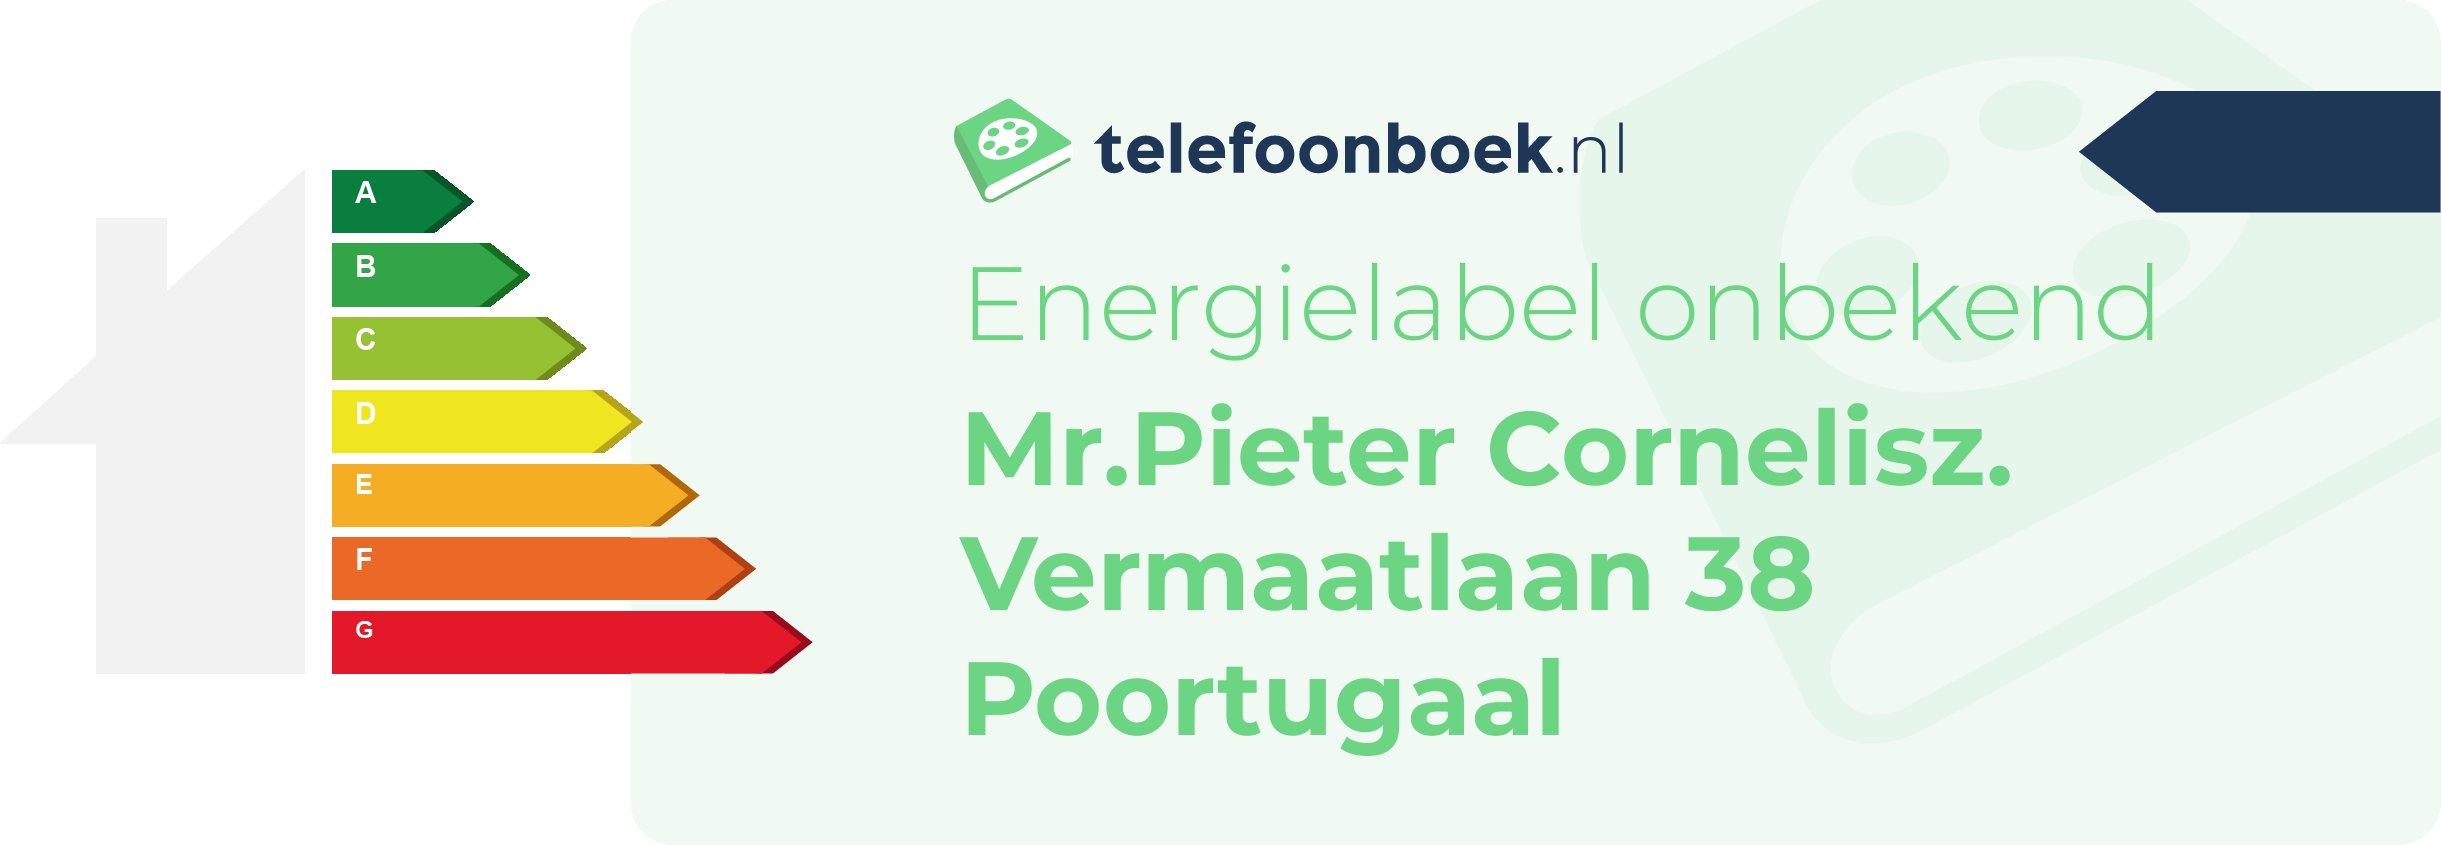 Energielabel Mr.Pieter Cornelisz. Vermaatlaan 38 Poortugaal